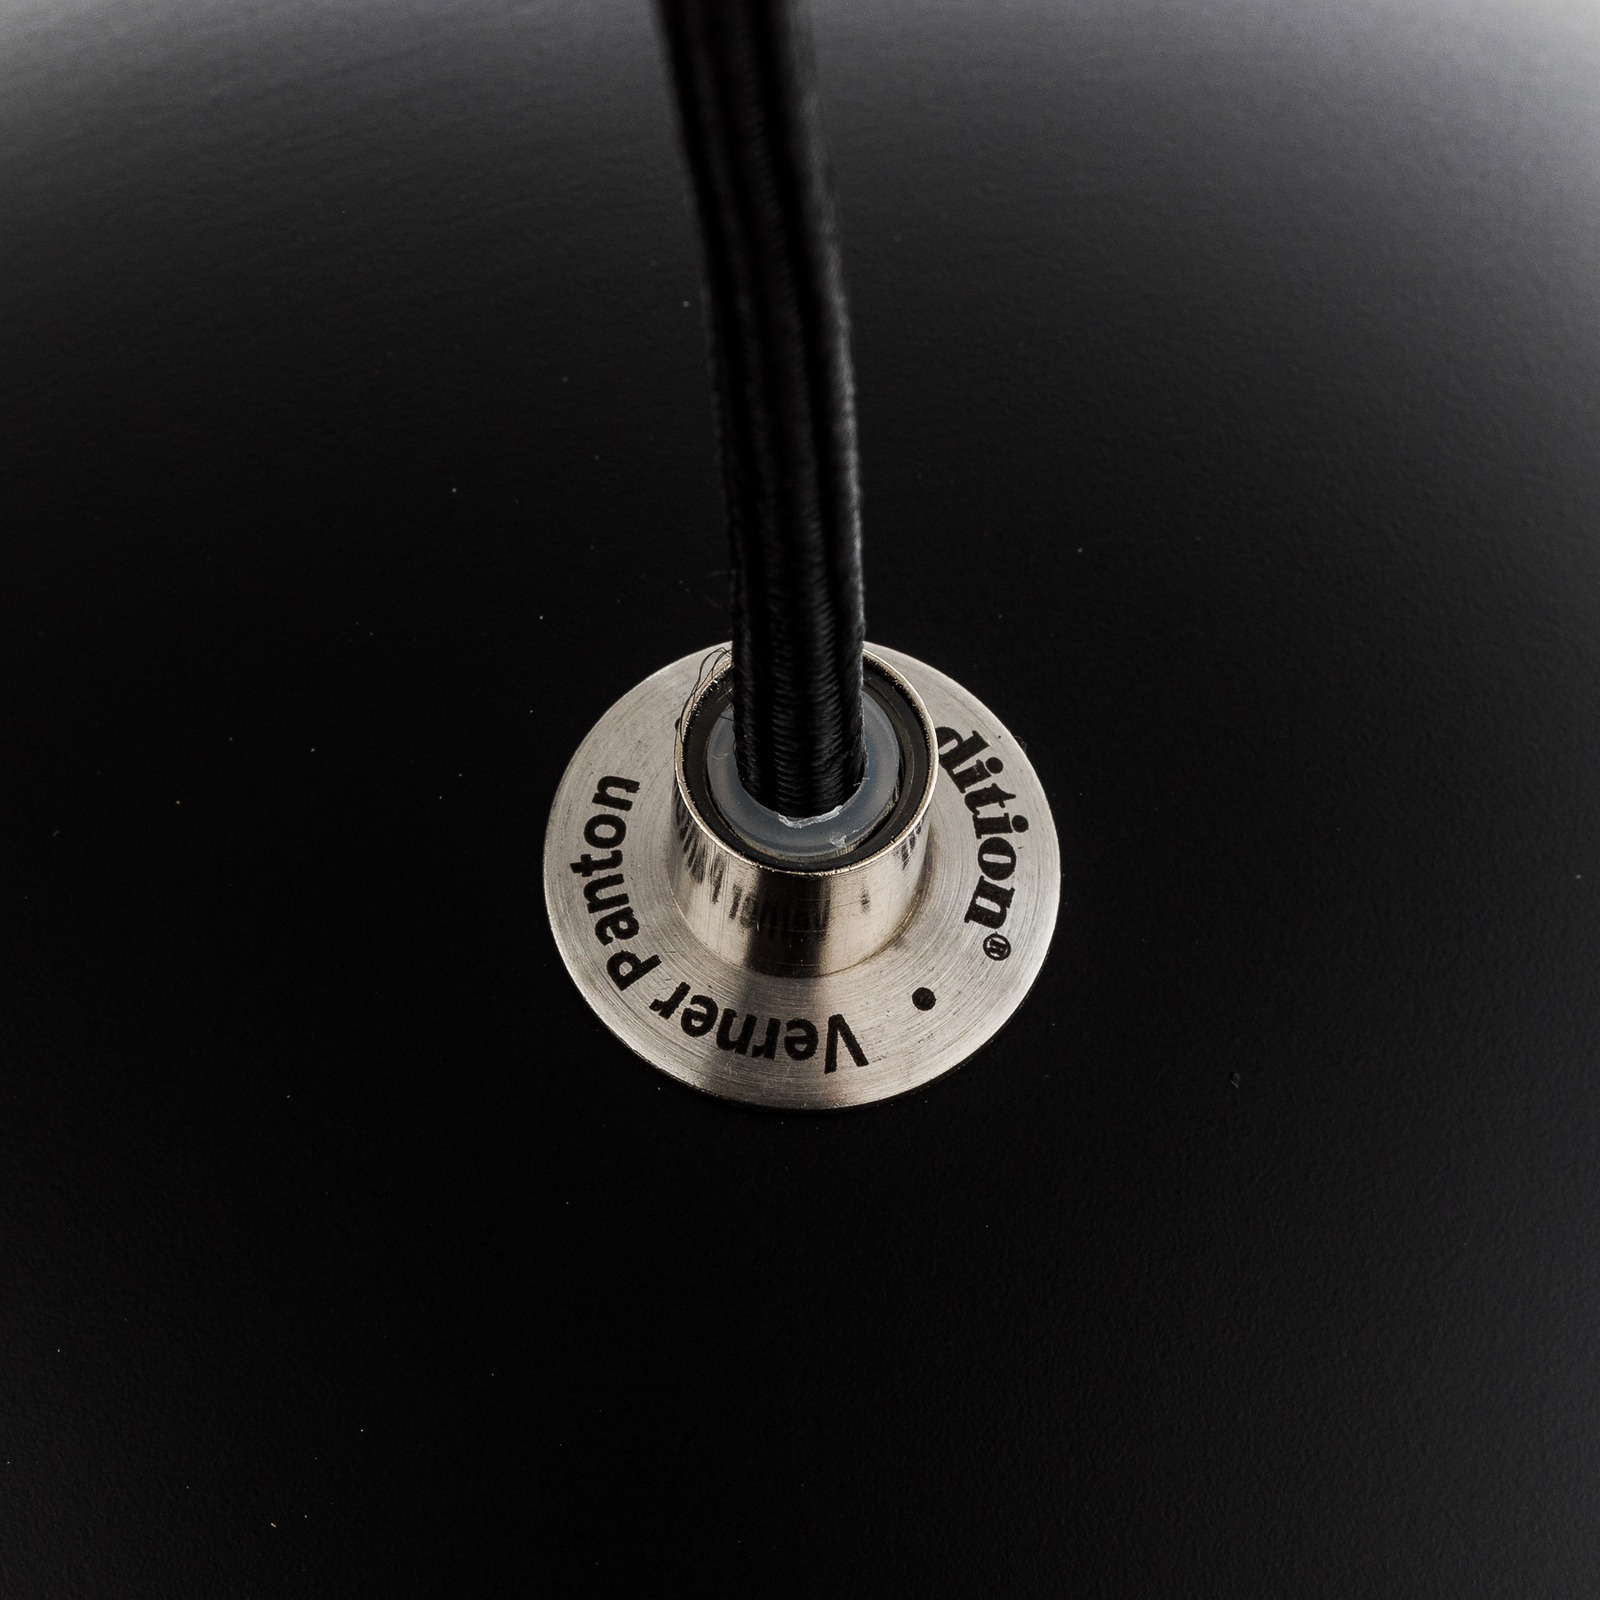 &Tradition viseća svjetiljka Topan VP6, Ø 21 cm, mat crna